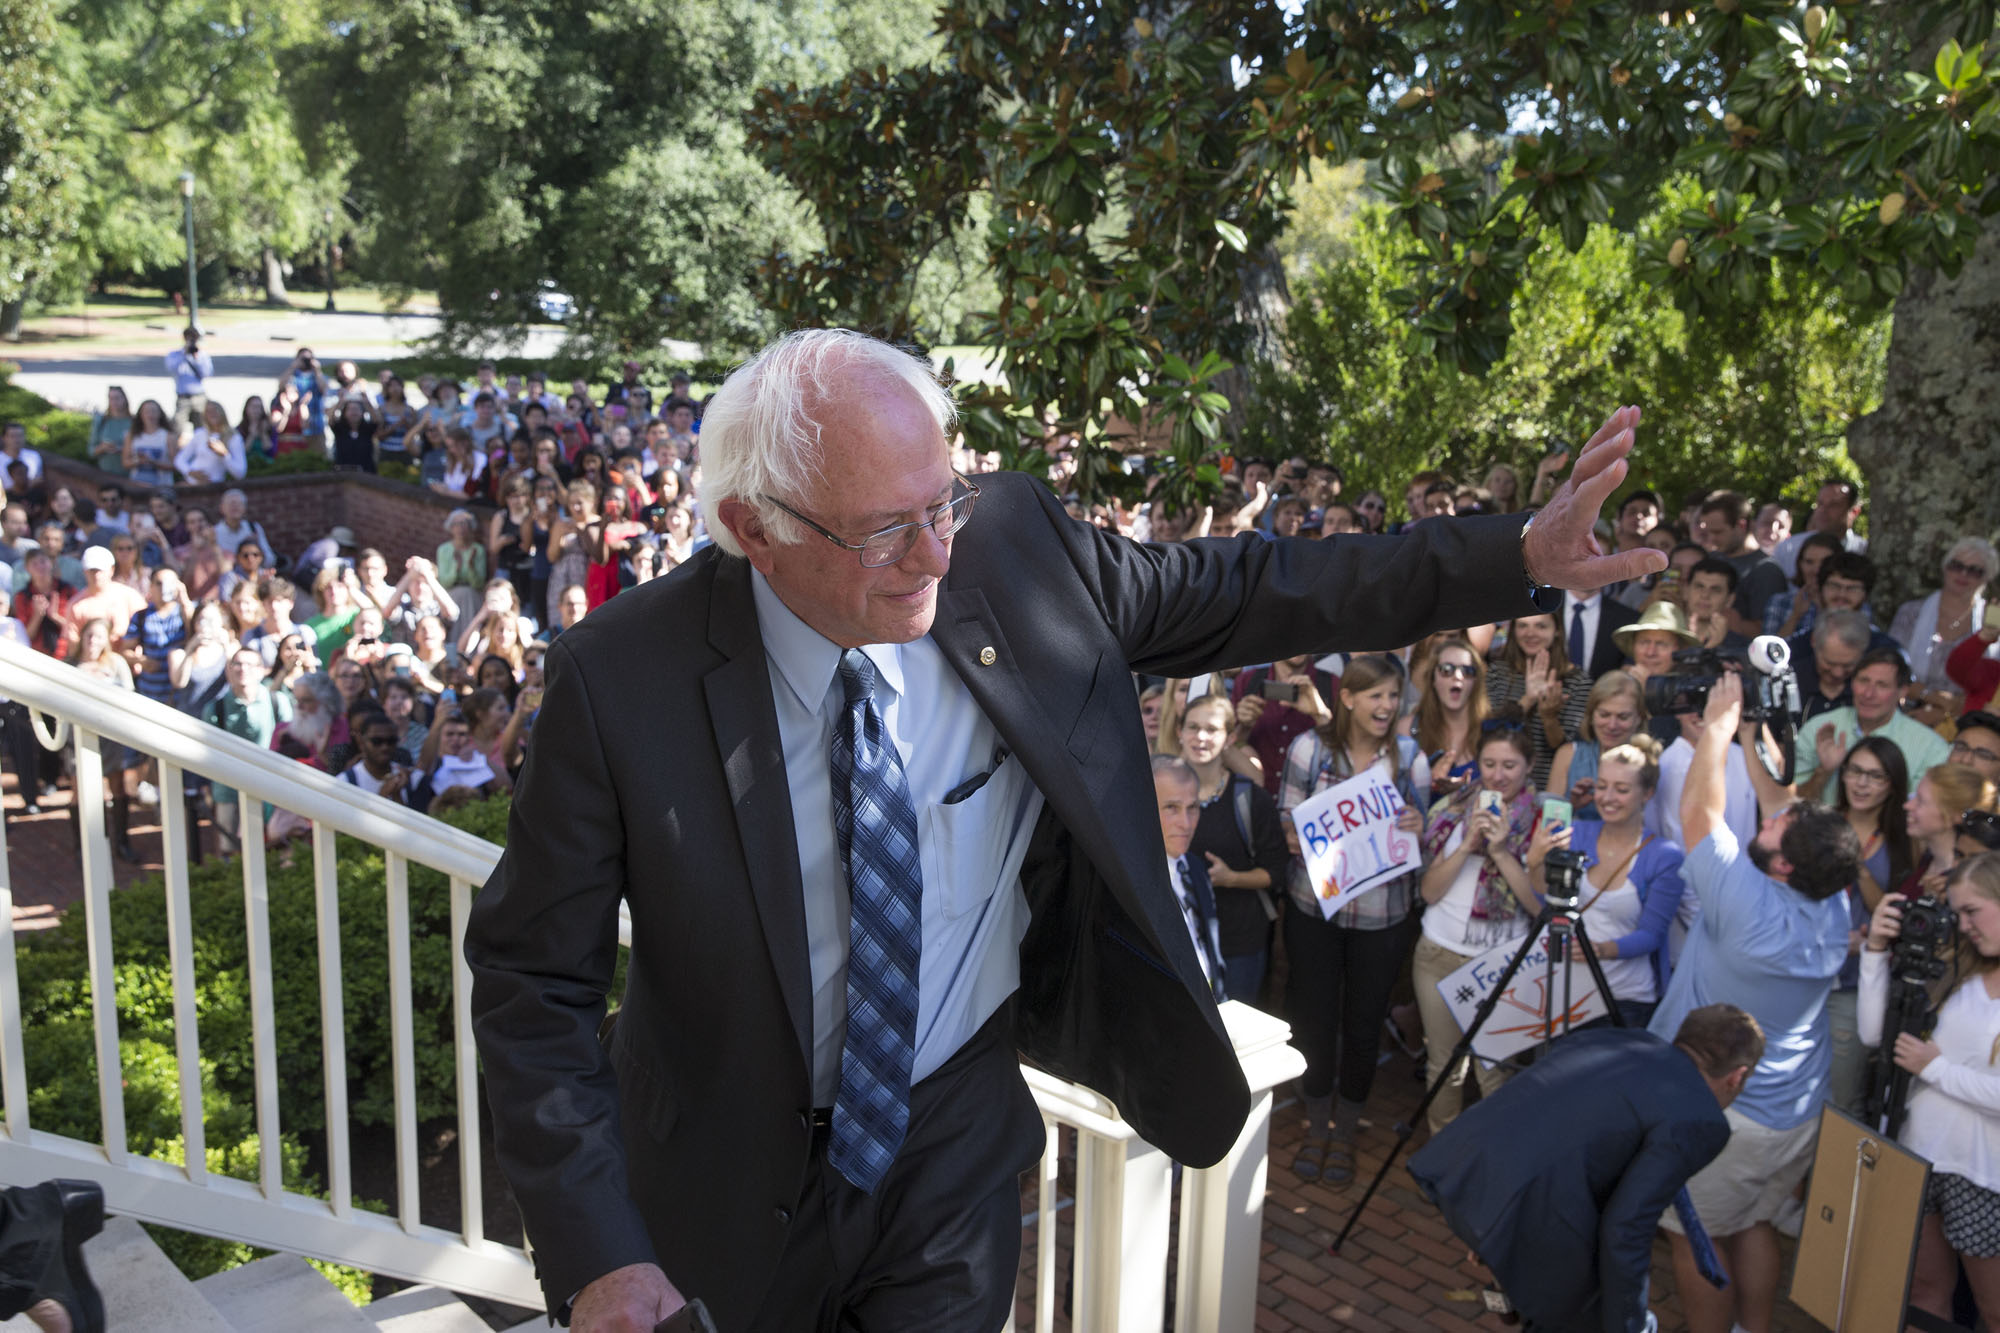 Bernie Sanders walking up steps waiving at a crowd below